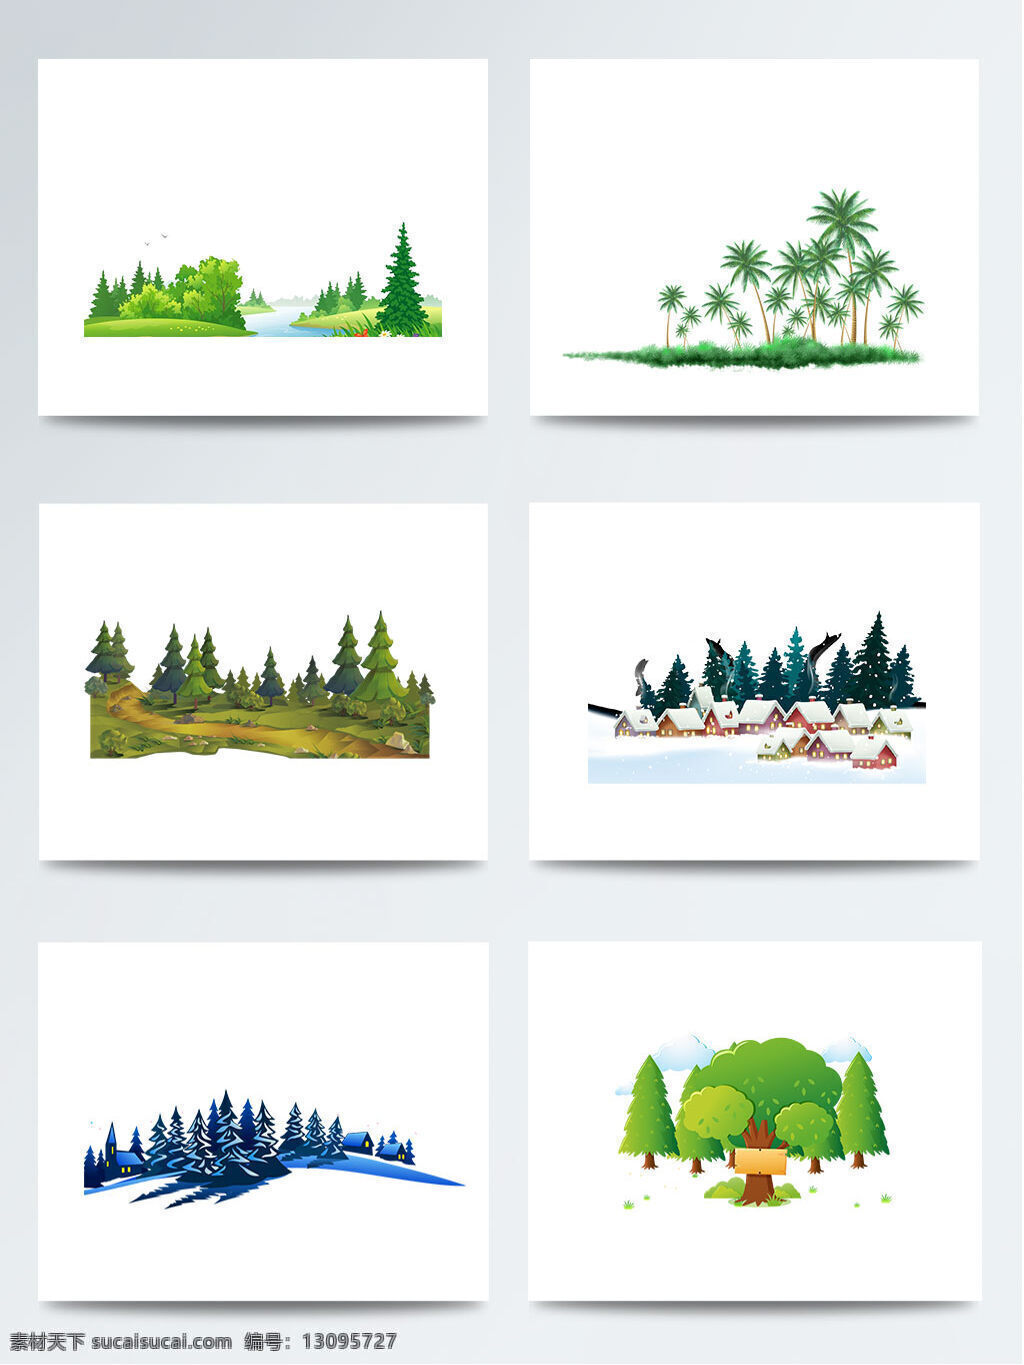 湿地 日 卡通 自然风景 树林 元素 插画 冬季树林 风景 环境 卡通人物 卡通植物 蓝色 绿色 森林 山峰 湿地日 树木